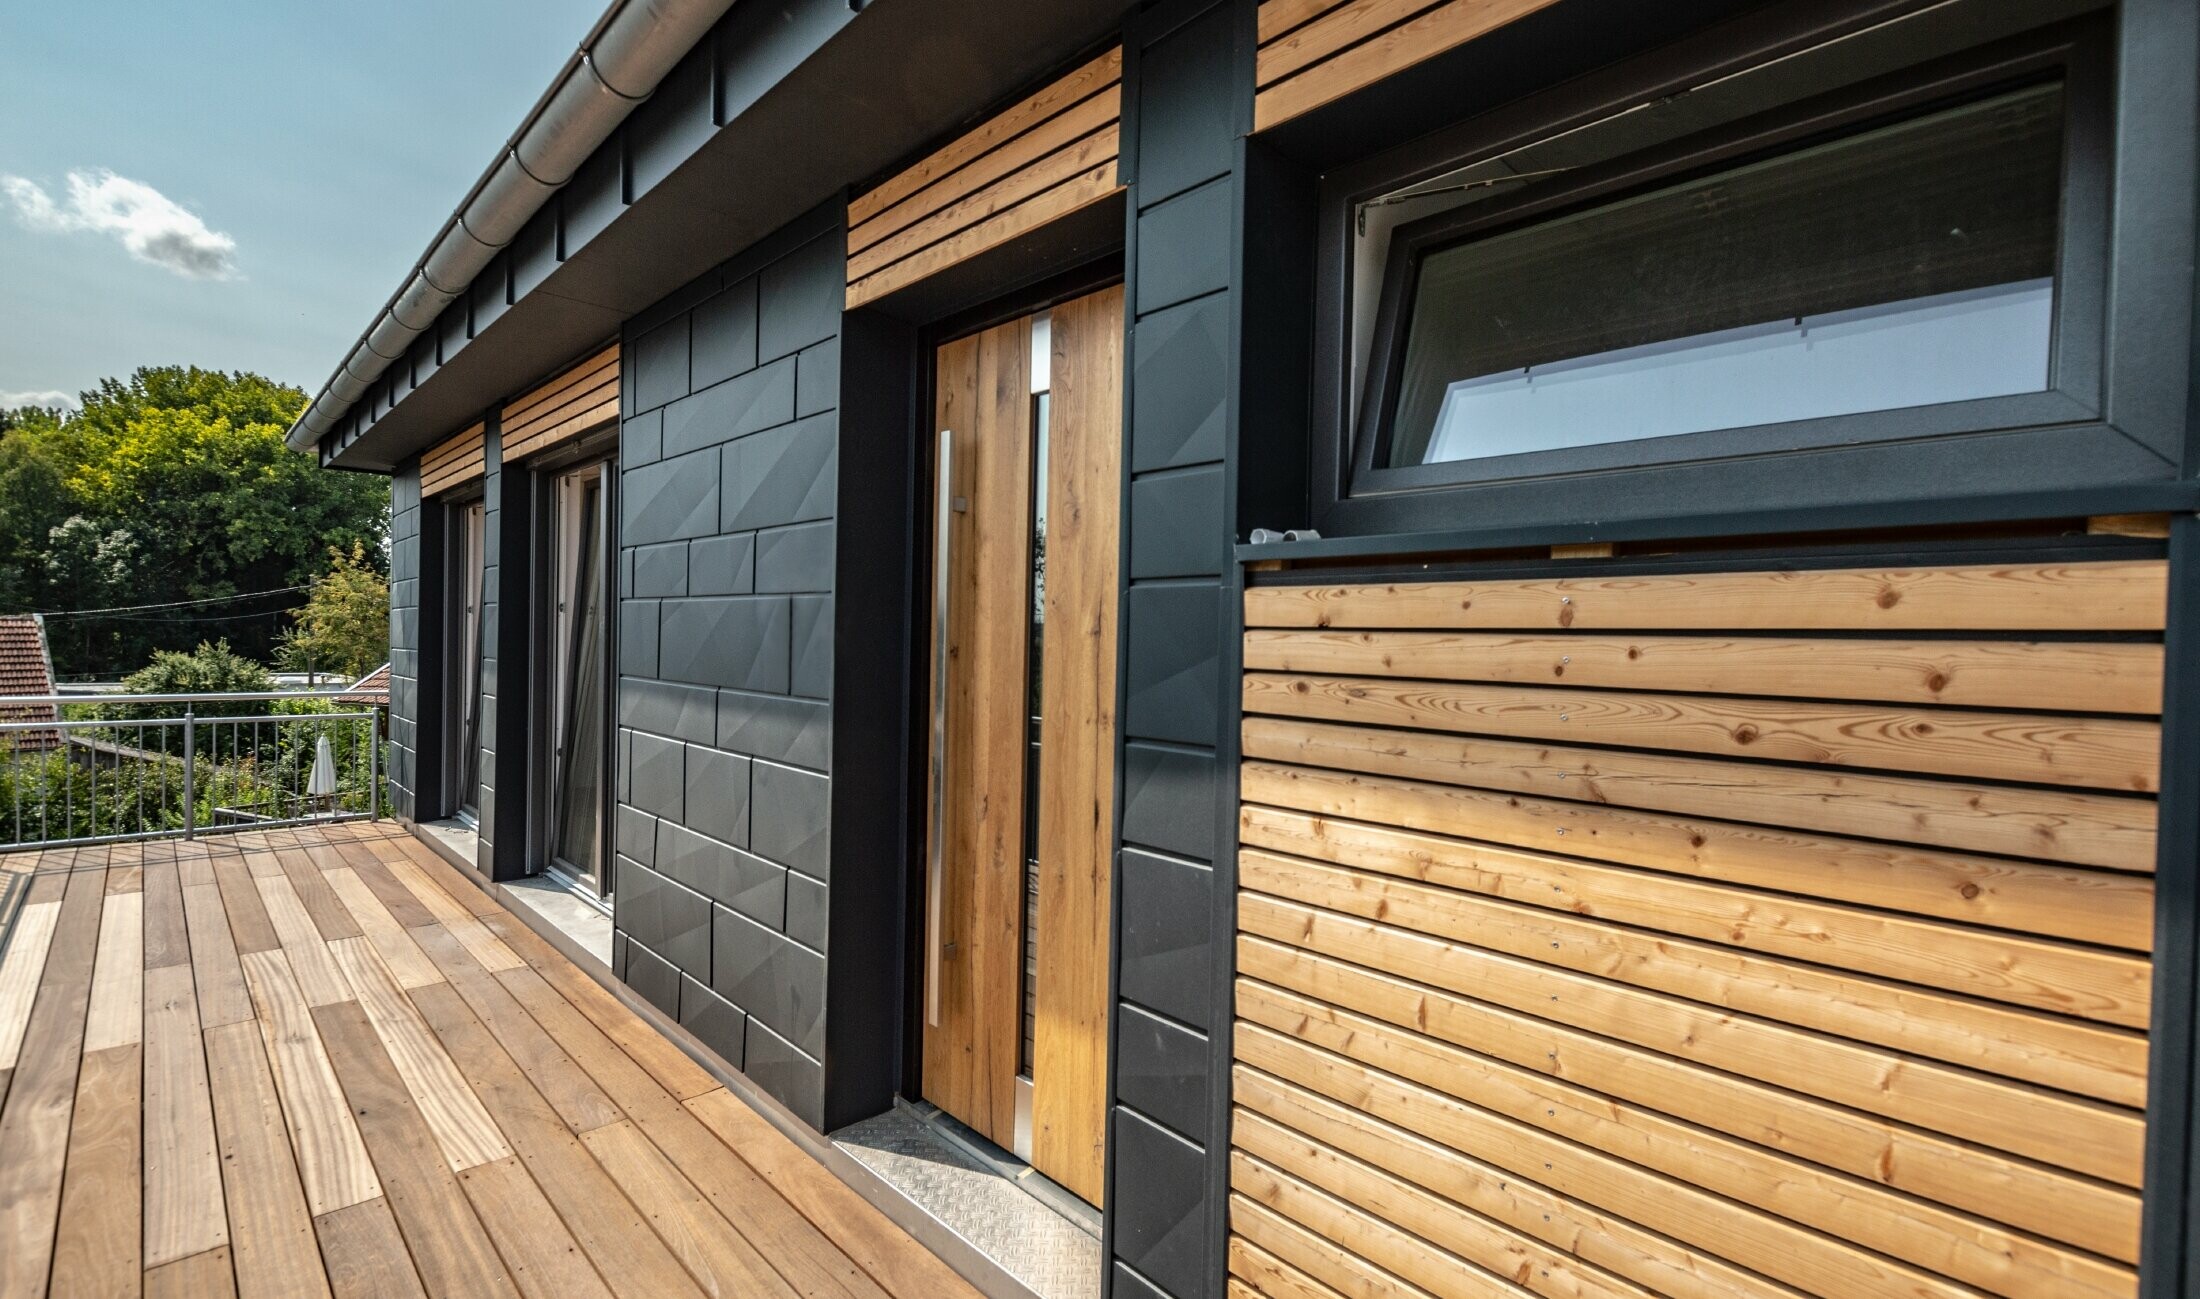 Fassadengestaltung durch Mischung der Materialien Aluminium - PREFA Siding.X in Anthrazit - und horizontalen Holzleisten.